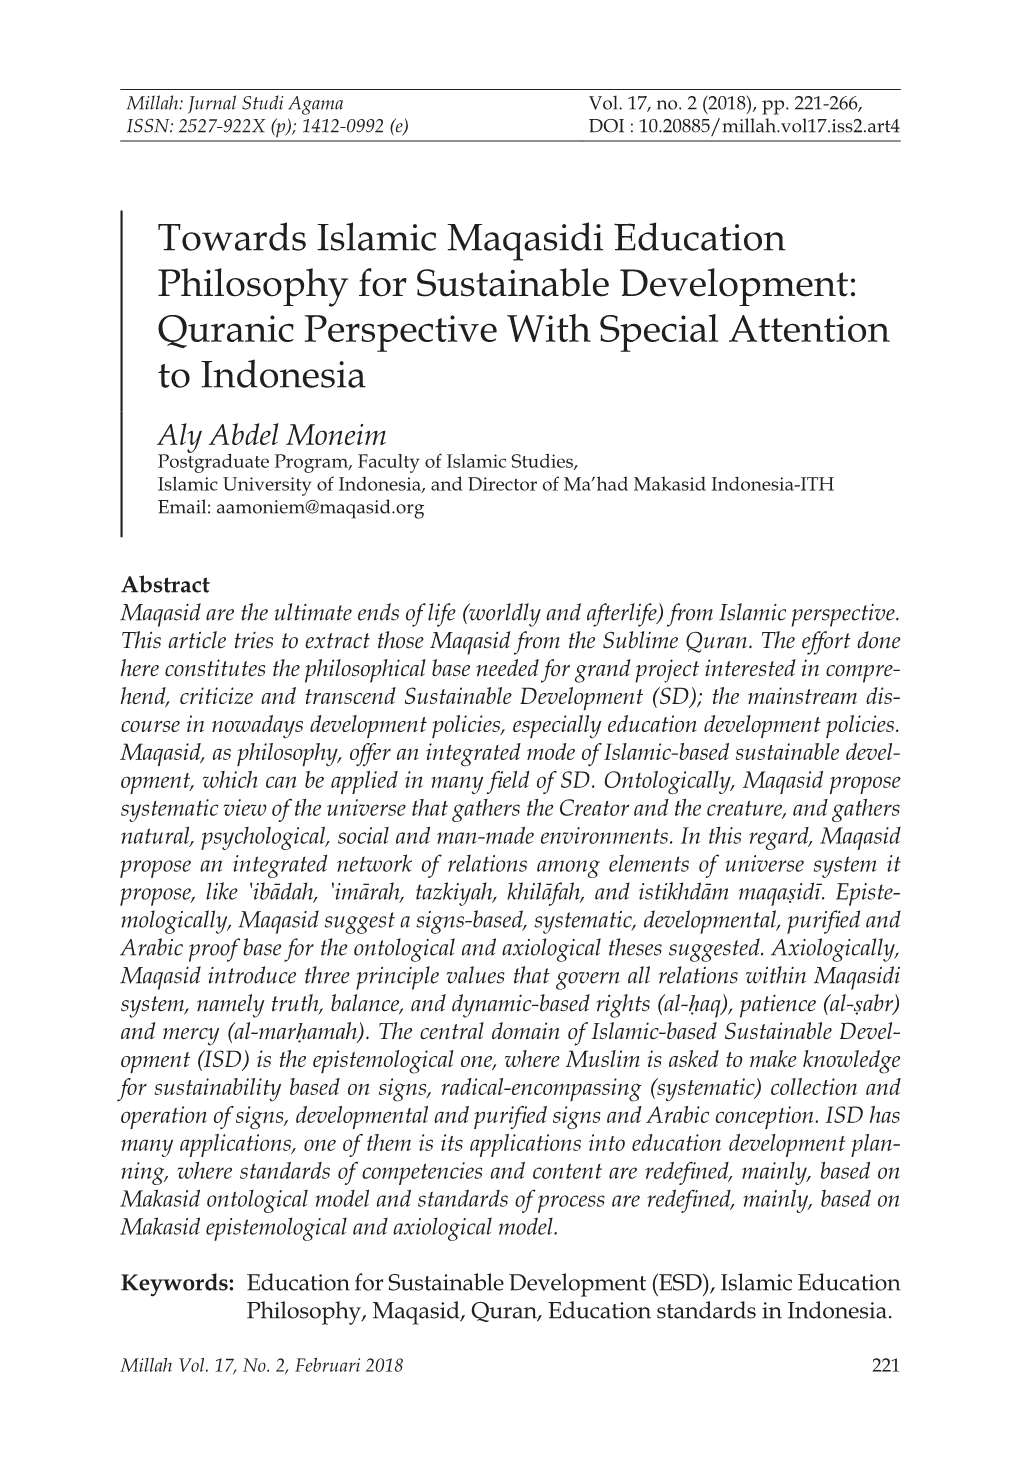 Towards Islamic Maqasidi Education Philosophy for Sustainable